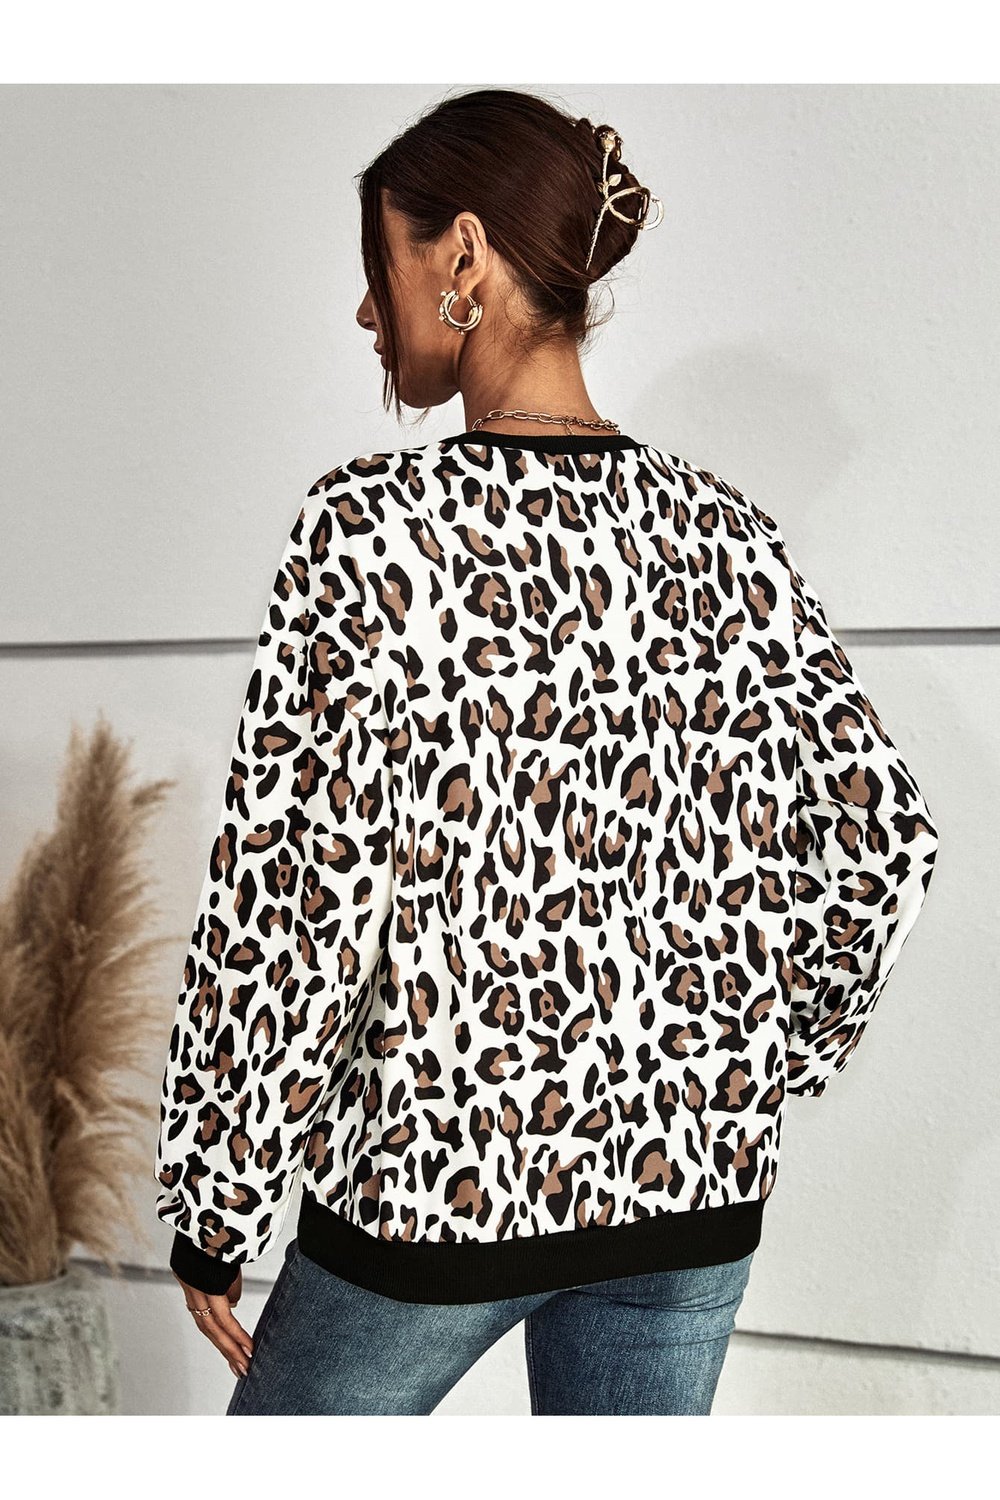 Leopard Round Neck Dropped Shoulder Sweatshirt - Sweatshirts & Hoodies - FITGGINS